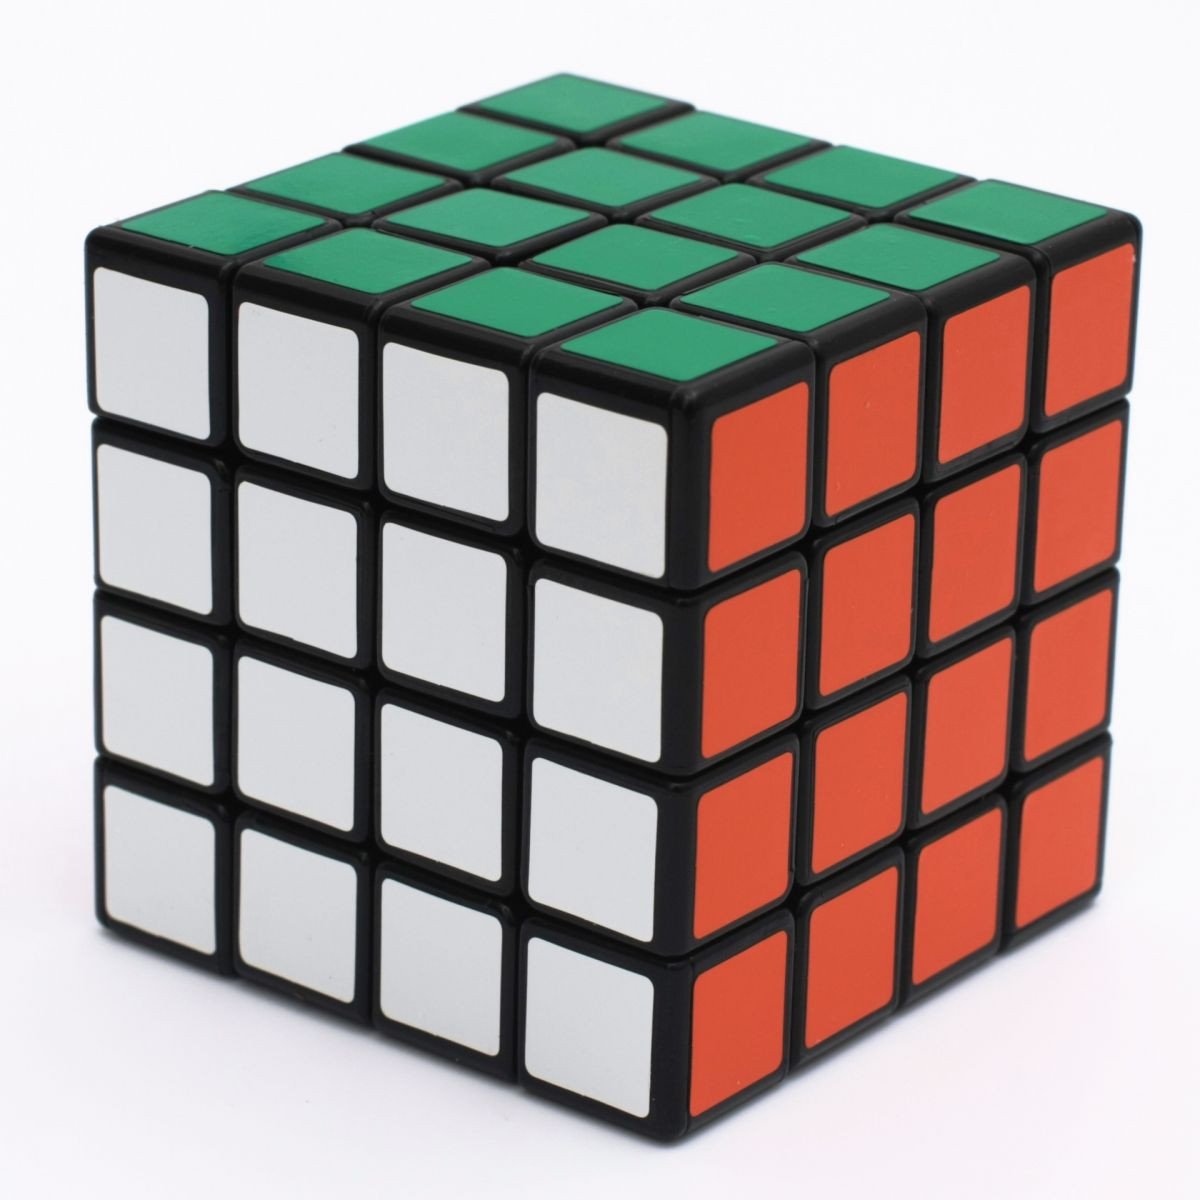 Bước C: Giải hoàn thiện Rubik 4x4 theo phương pháp giải Rubik 3x3 21